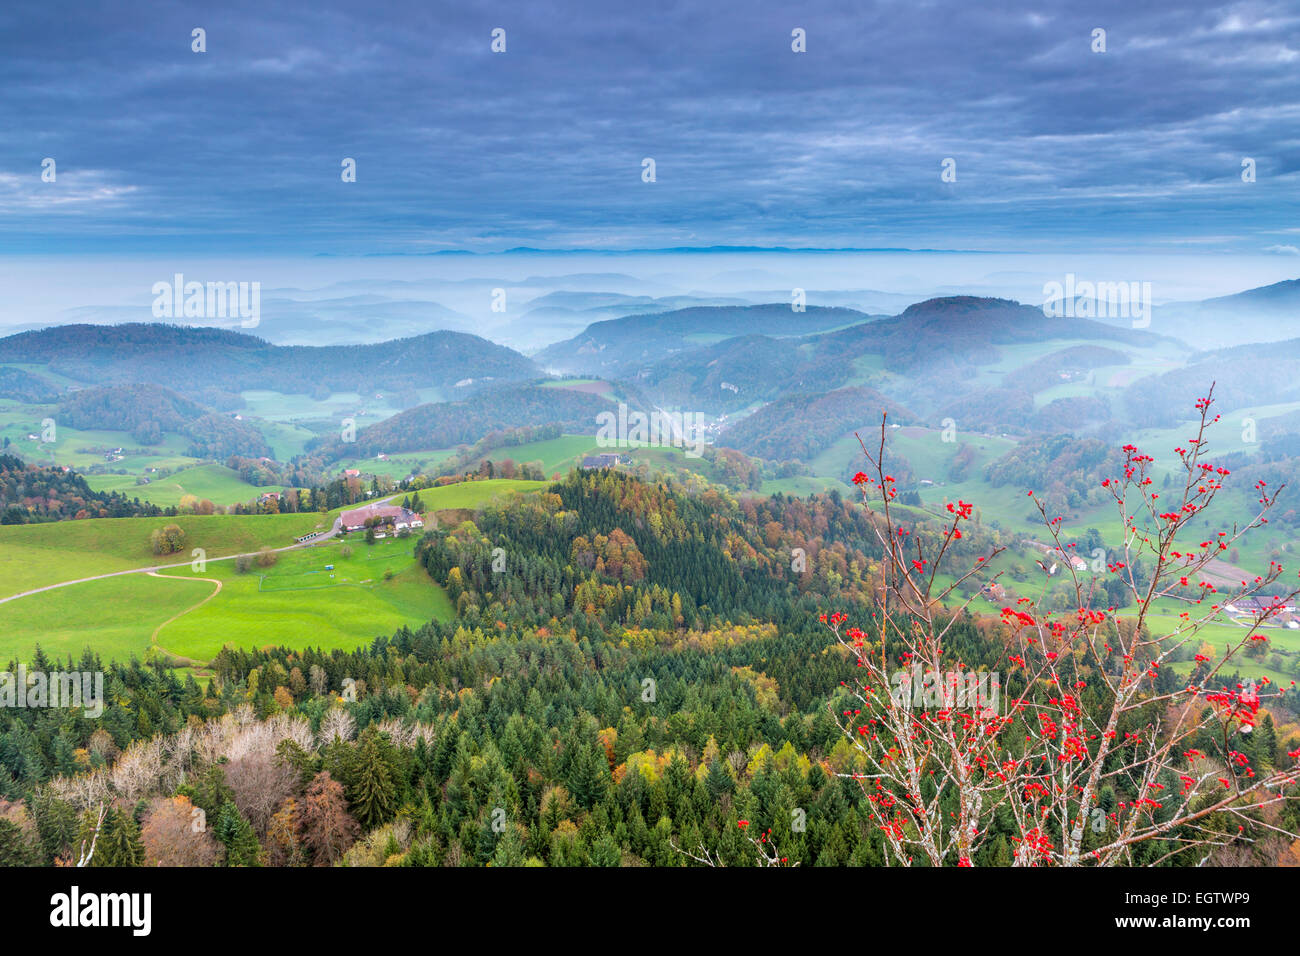 Vue du Belchenflue sur la frontière de canton de Bâle-Campagne et le canton de Soleure, dans les montagnes du Jura suisse. Banque D'Images